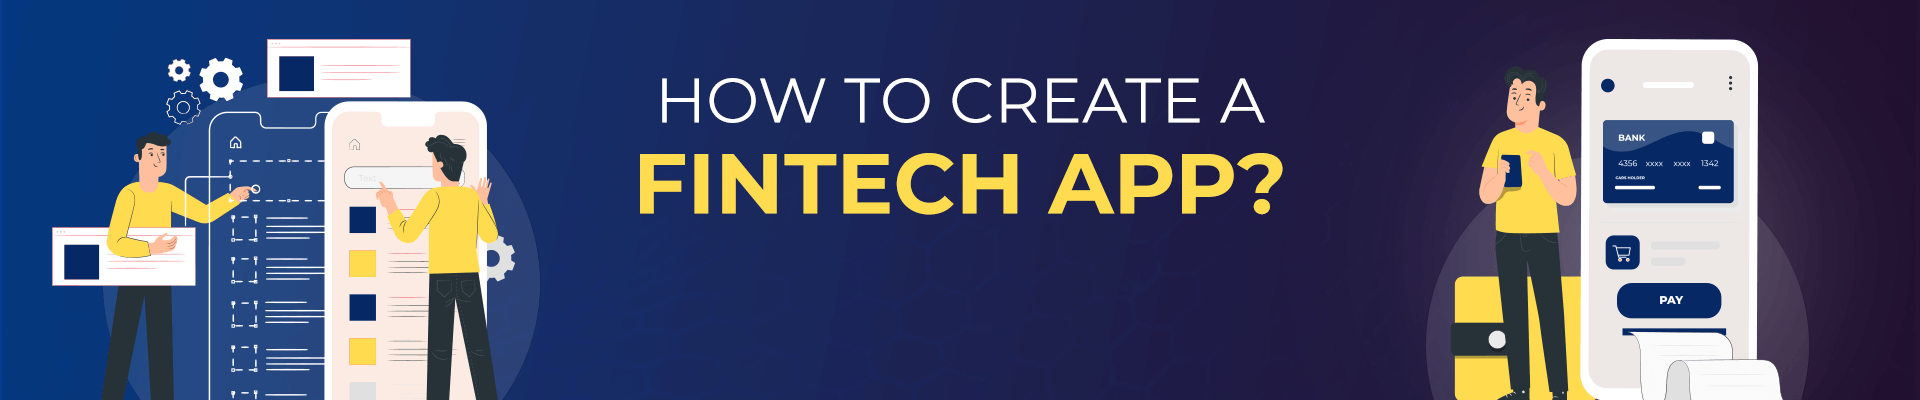 Create a Fintech App